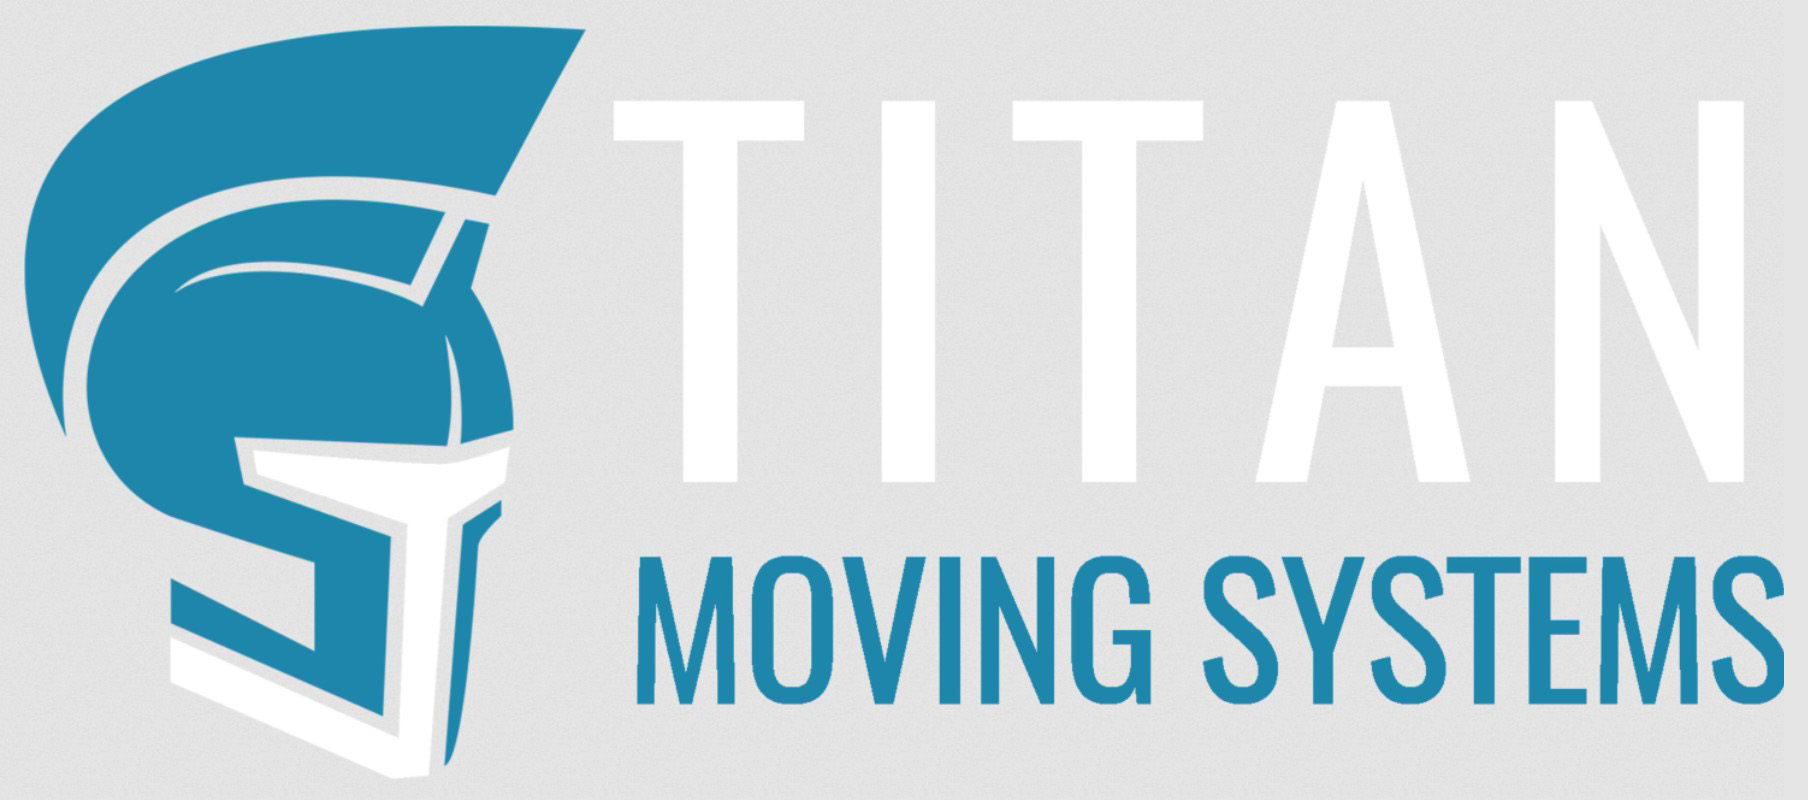 Titan Moving Systems company logo